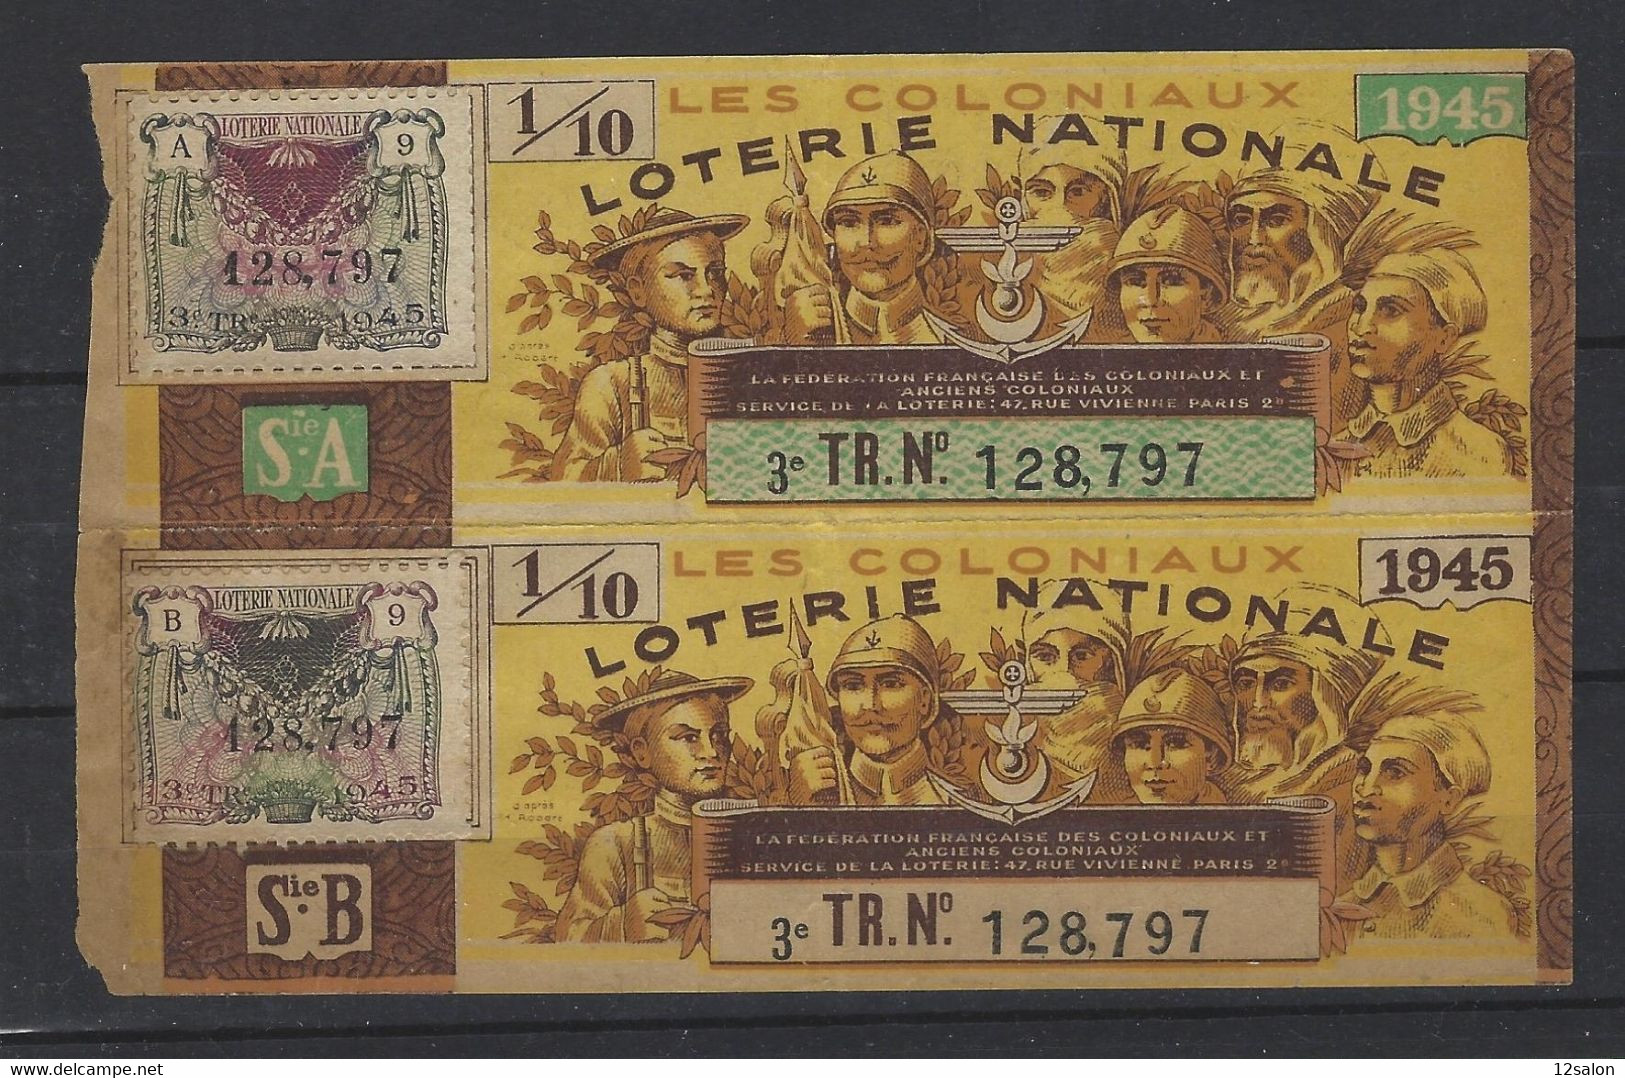 FRANCE LOTERIE NATIONALE LES COLONIAUX 1945 - Billets De Loterie